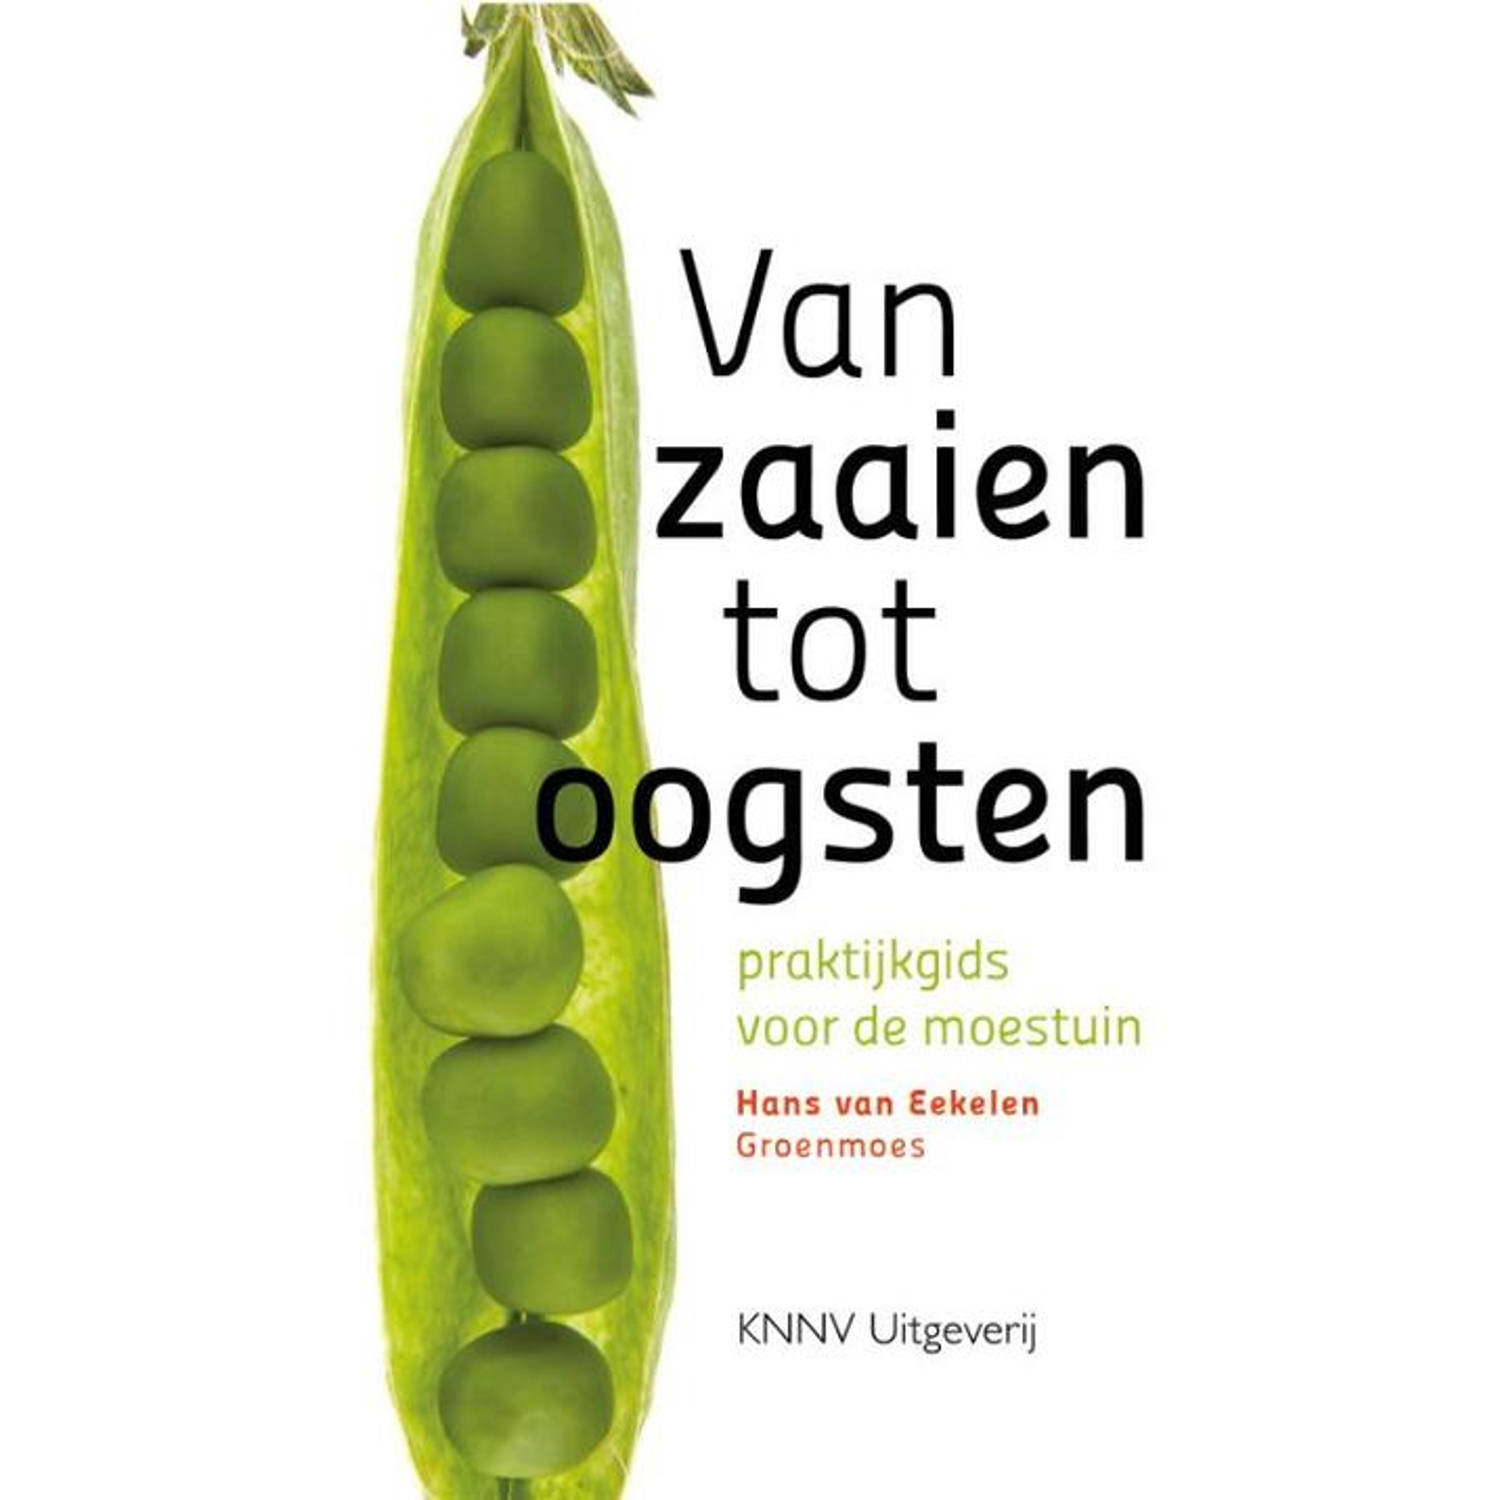 Van zaaien tot oogsten. praktijkgids voor de moestuin, Van Eekelen, Hans, Paperback